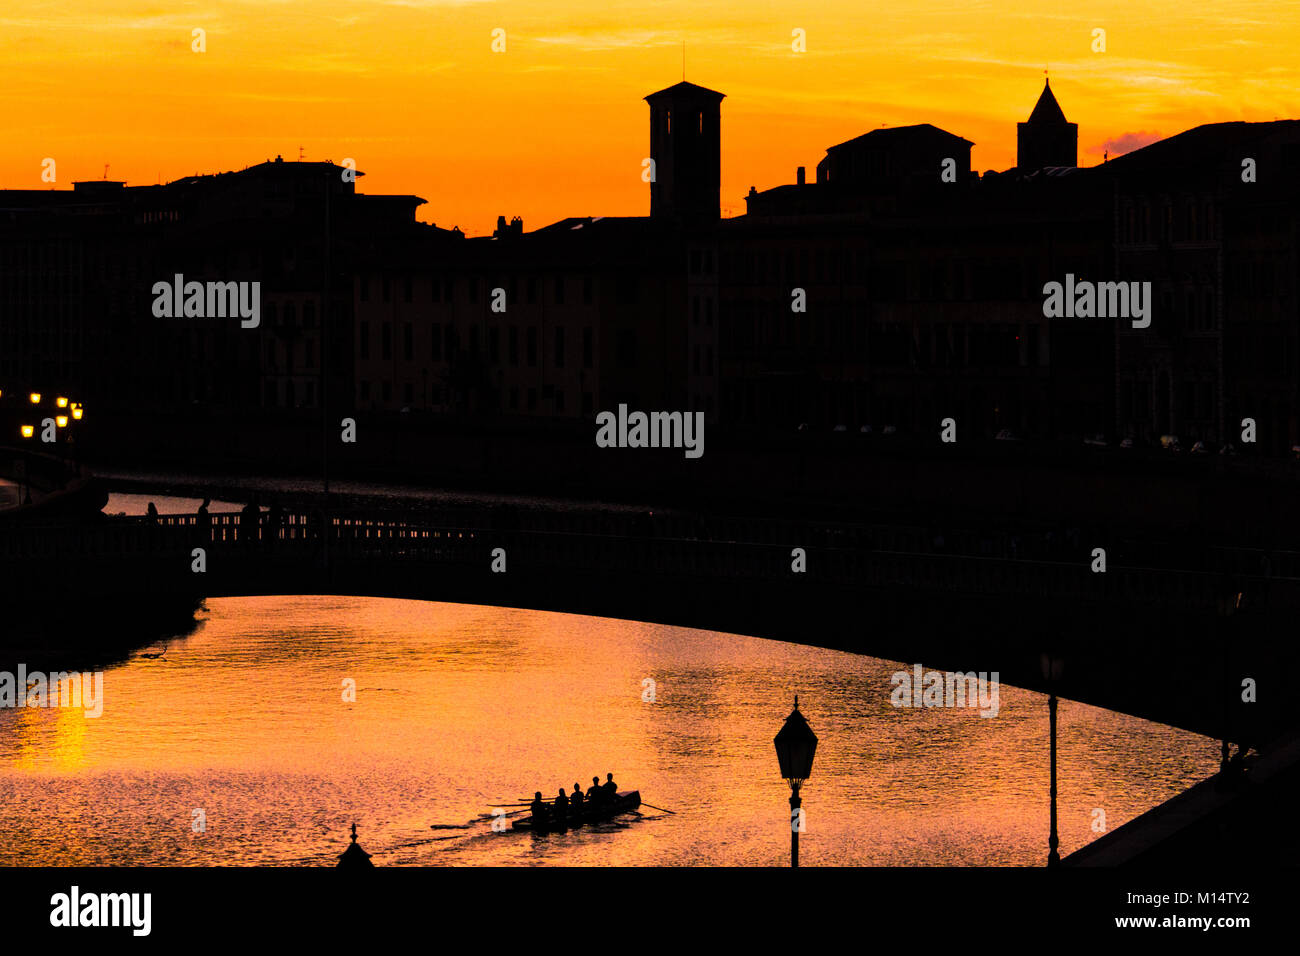 Silhouette von Pisa - Sonne auf der Stadt Pisa über den Fluss Arno in der Nacht, während eine rudernde Mannschaft Zeile unterhalb einer Brücke Stockfoto